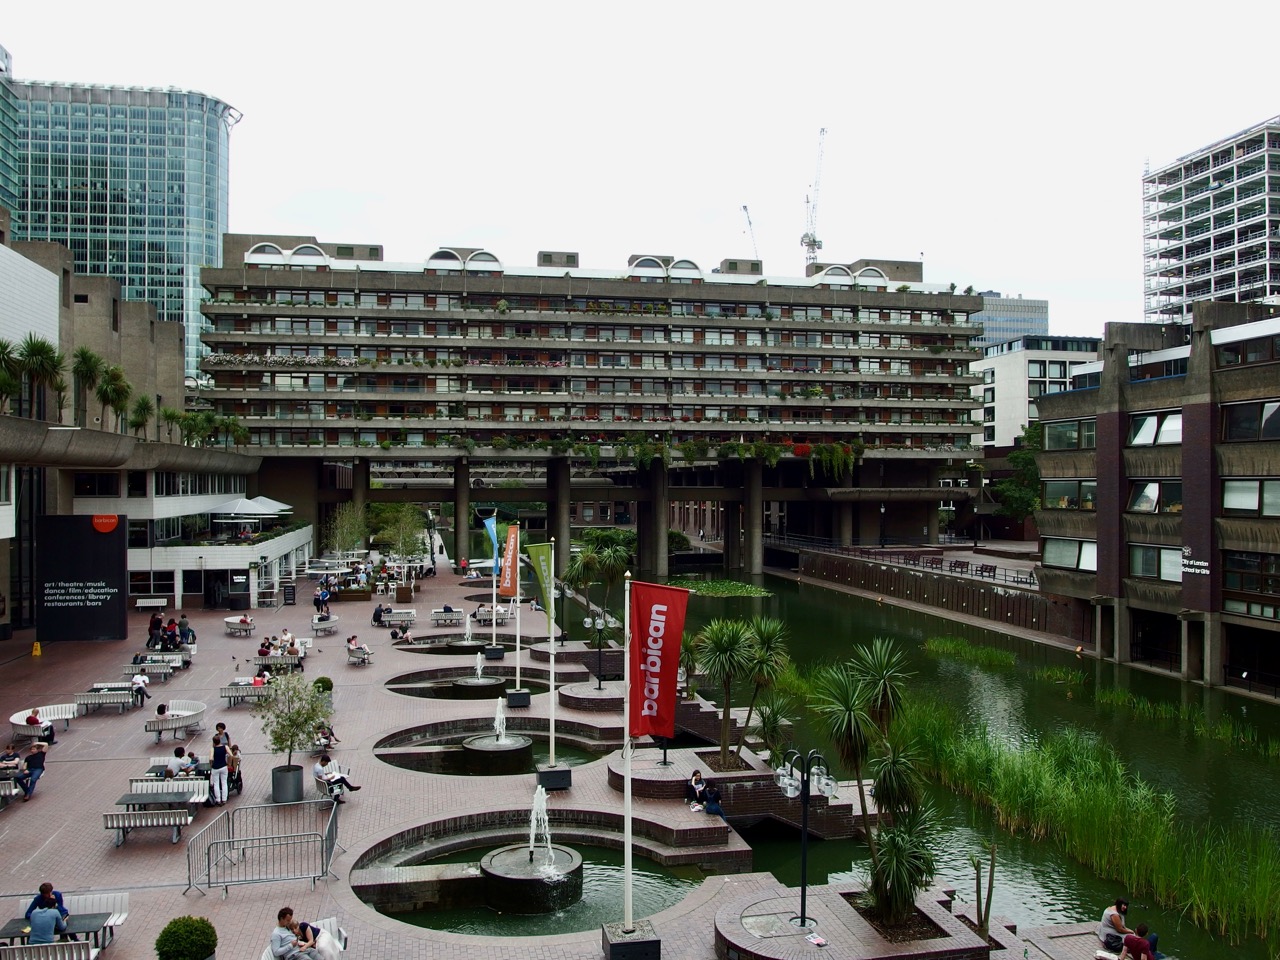 Barbican Centre, London